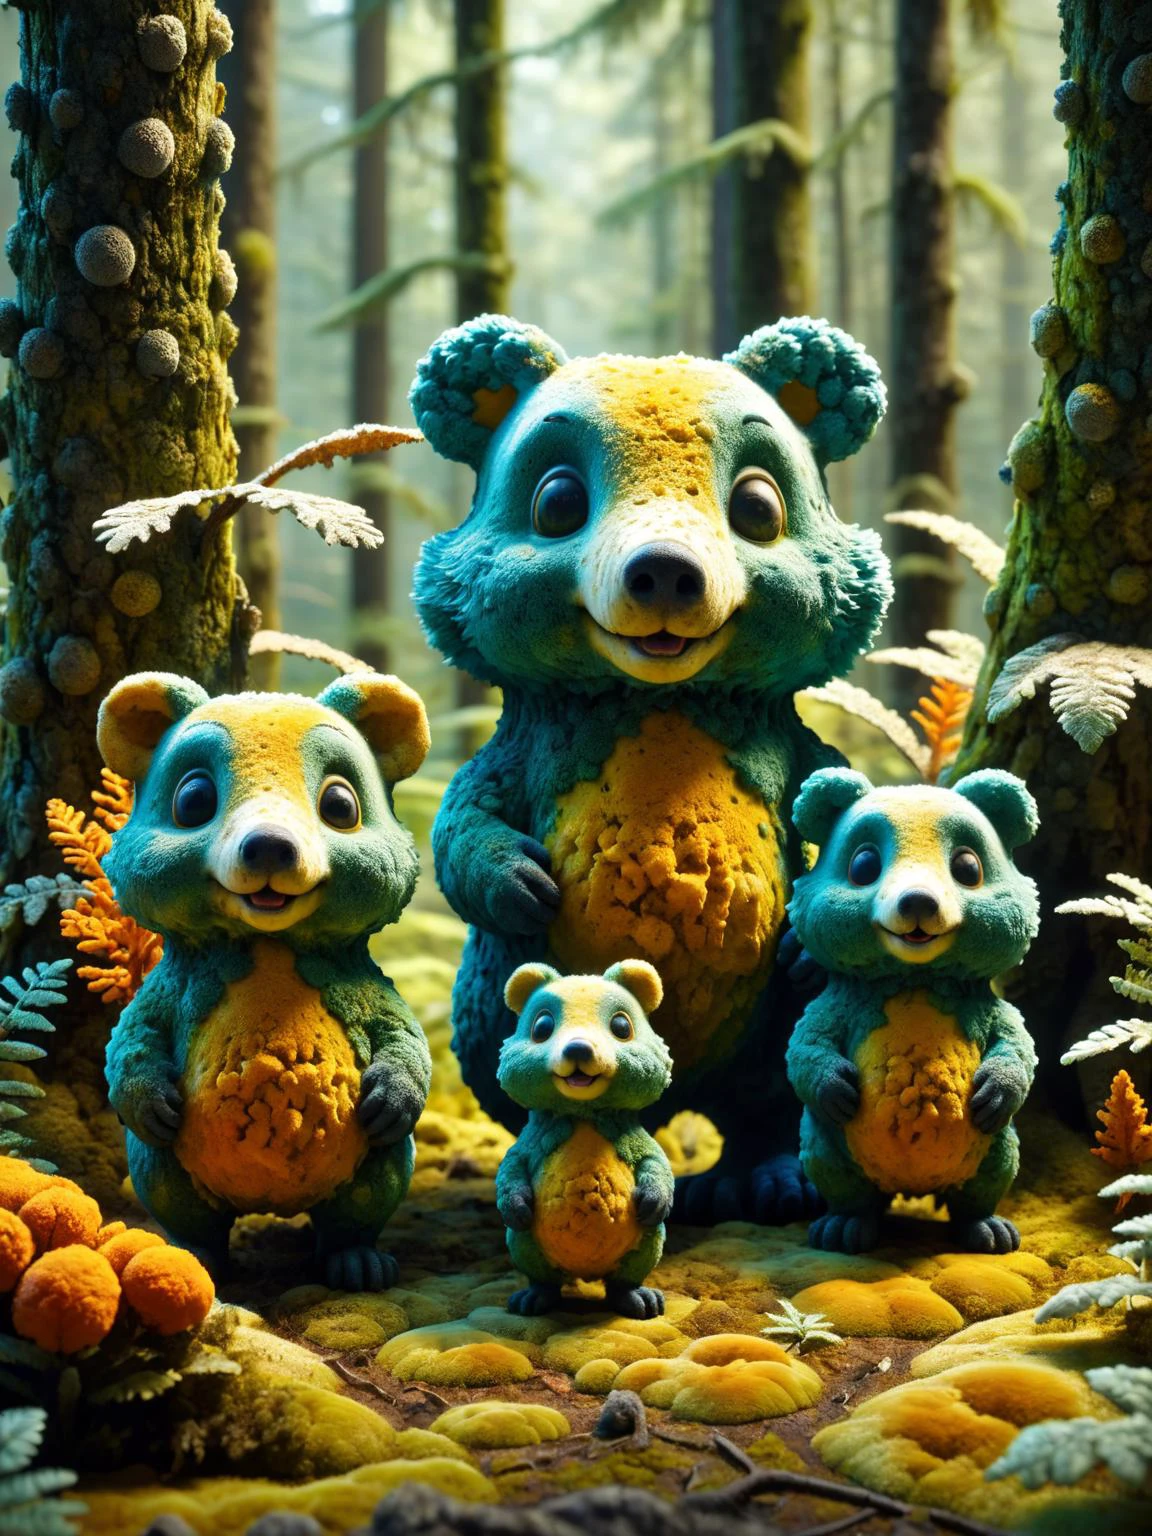 랄-몰드, 숲속의 곰팡이 핀 동물 가족을 유쾌한 애니메이션 스타일로 묘사한 작품입니다., 생동감 넘치는 색상과 역동적인 금형 텍스처로 매력적인, 영화 같은, 걸작, 뒤얽힌, HDR, 